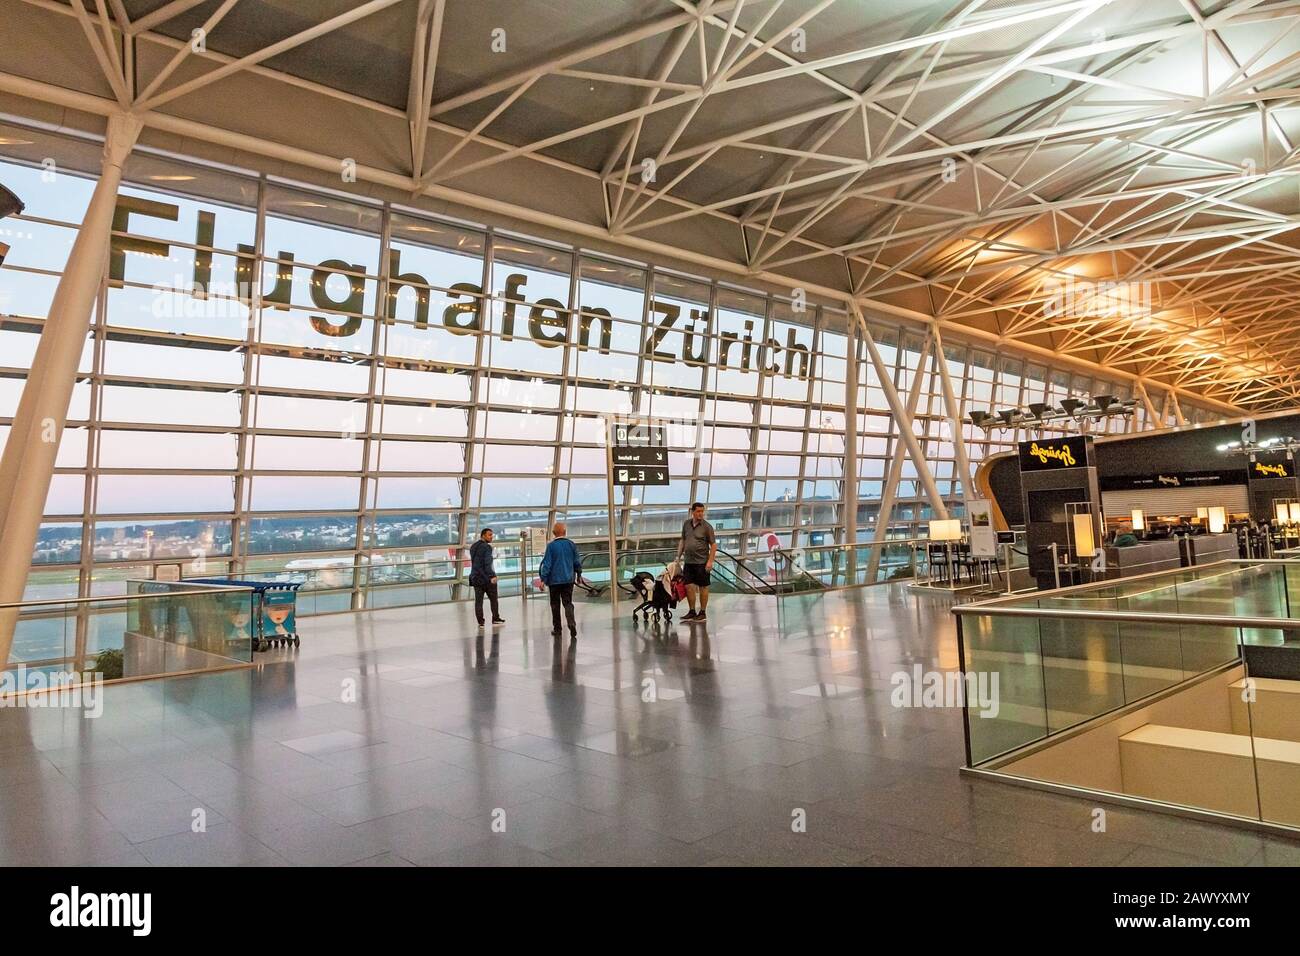 Zurich, Suisse - 11 juin 2017 : aéroport de Zurich (Flughafen Zurich), espace d'attente après l'enregistrement - vue vers l'aérodrome Banque D'Images